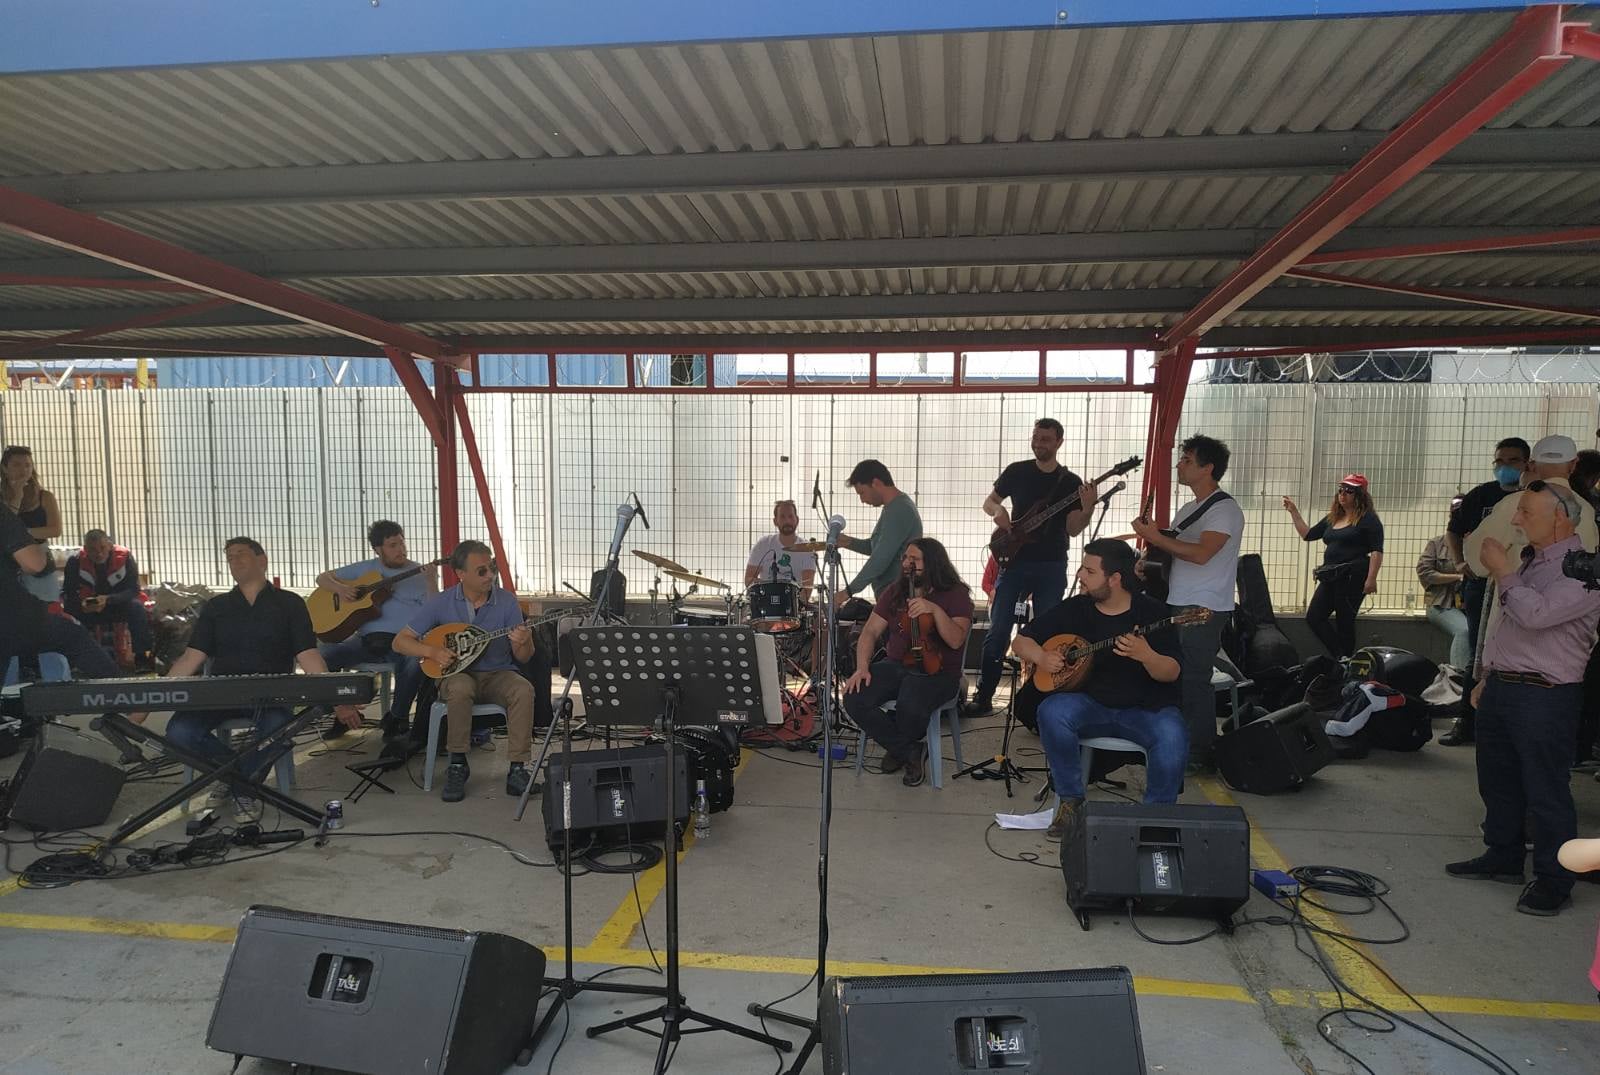 Πανελλήνιος Μουσικός Σύλλογος: Μοτοπορεία στο Υπουργείο Παιδείας στις 10 Ιανουαρίου